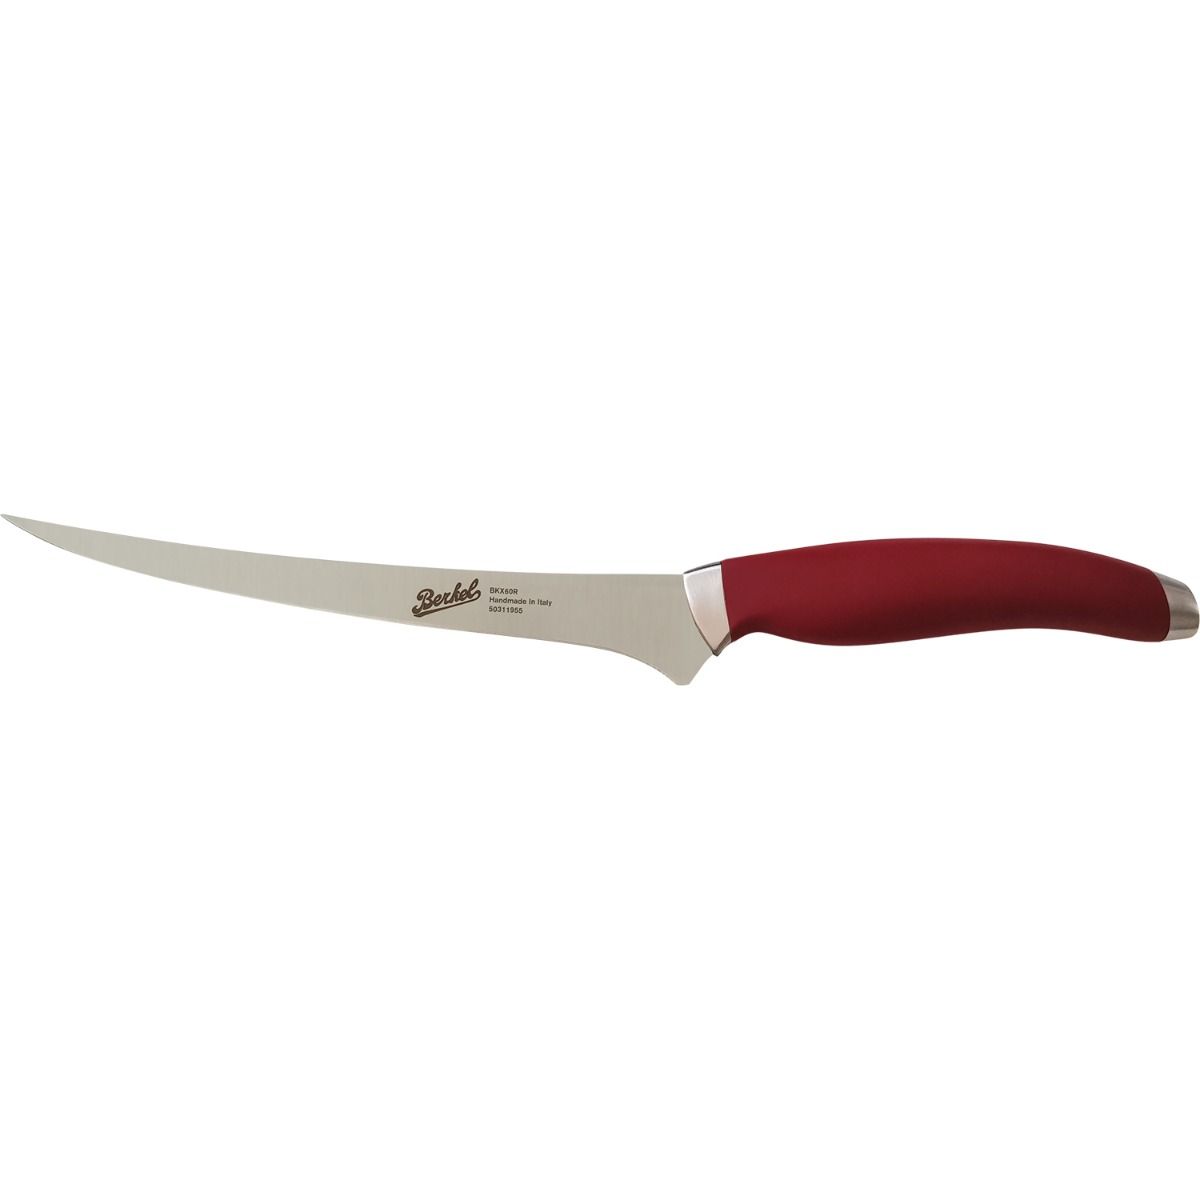 Fillet Knife 19 cm  Stainless Steel Berkel Teknica Handle Red Resin